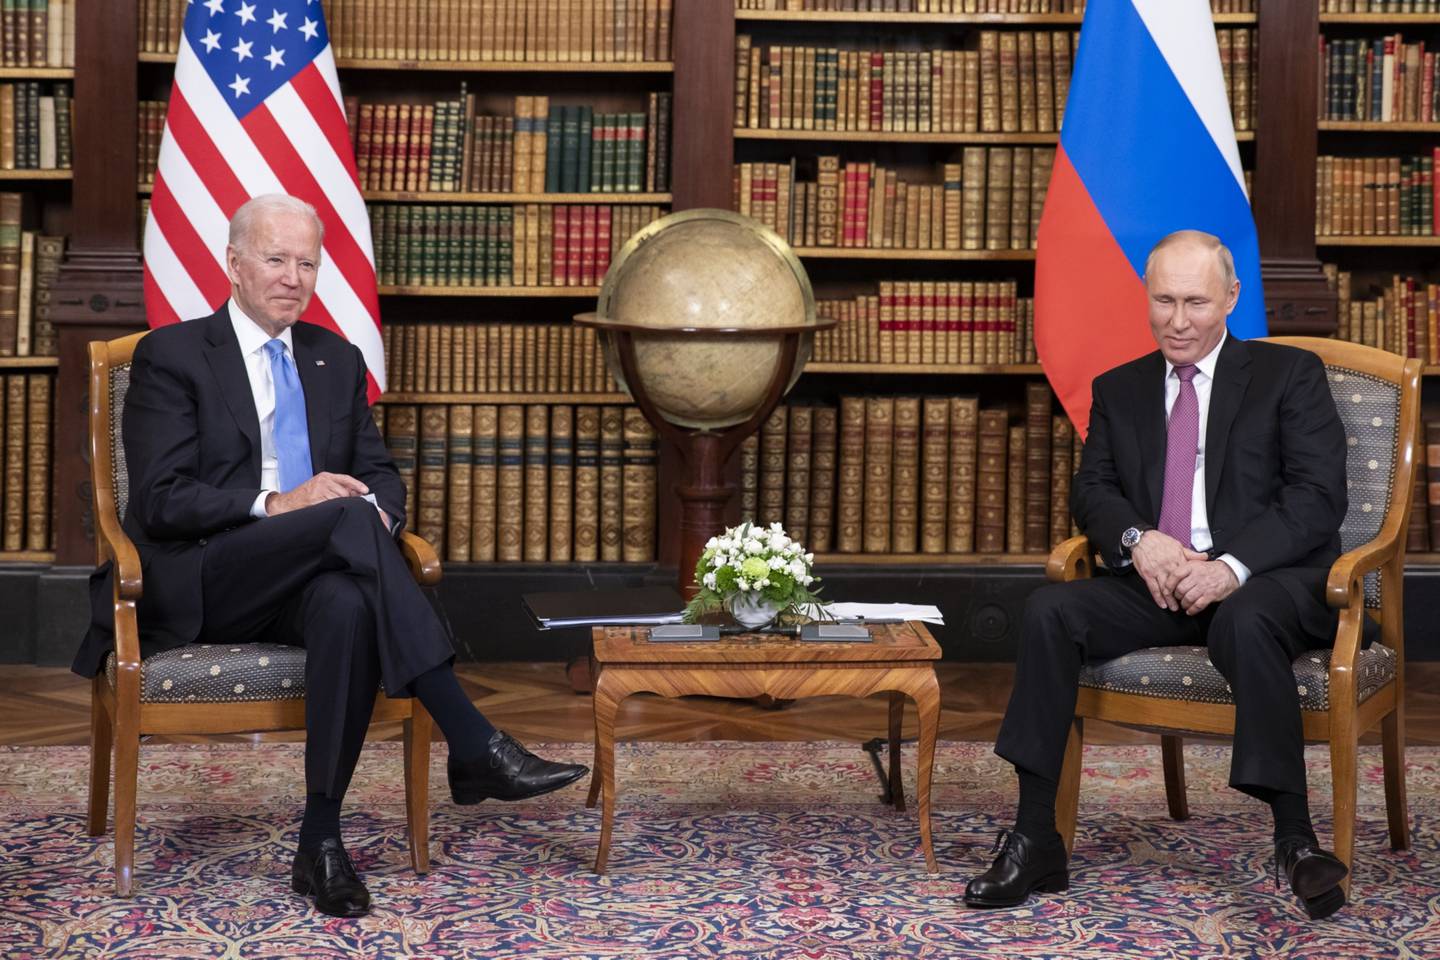 El presidente Joe Biden tuvo su primera reunión presencial con el presidente Vladimir Putin en 2021.dfd